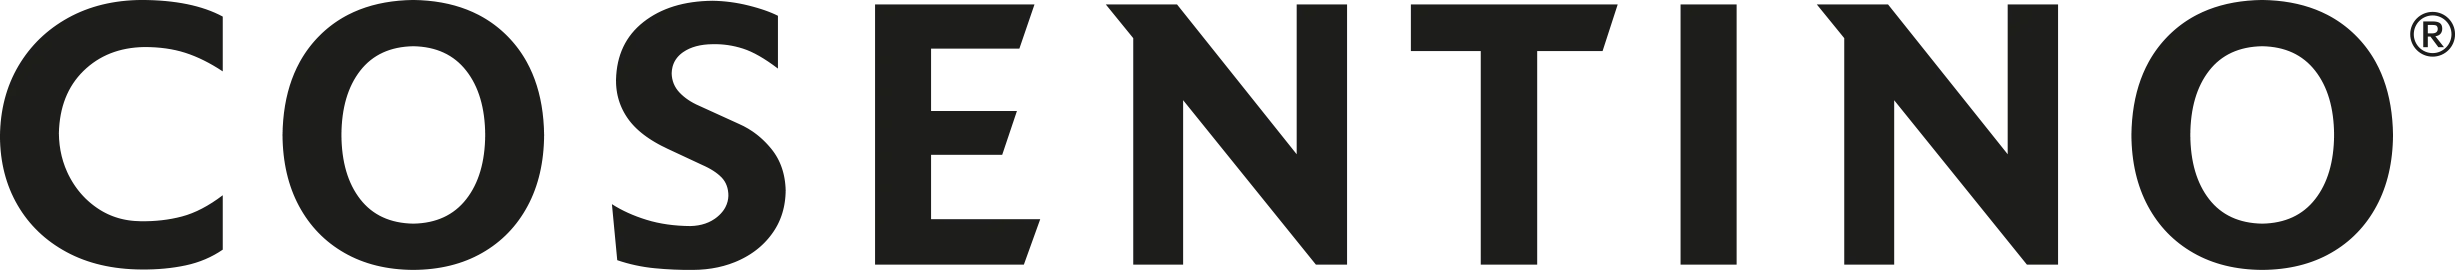 Cosentino logo horizontal